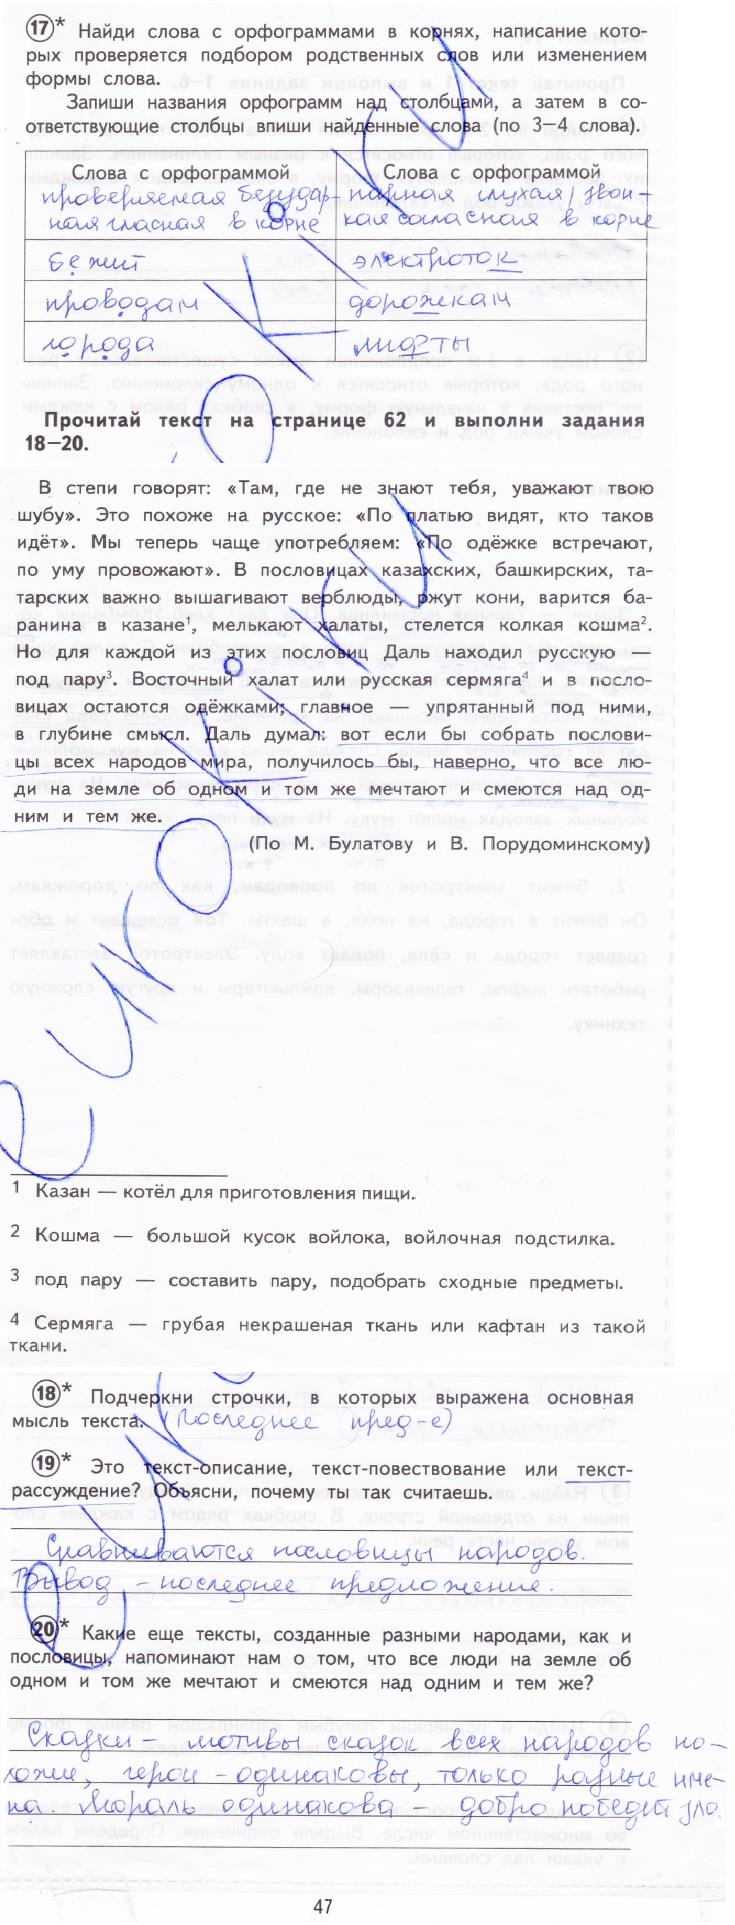 гдз 4 класс тетрадь для проверочных работ страница 47 русский язык Лаврова